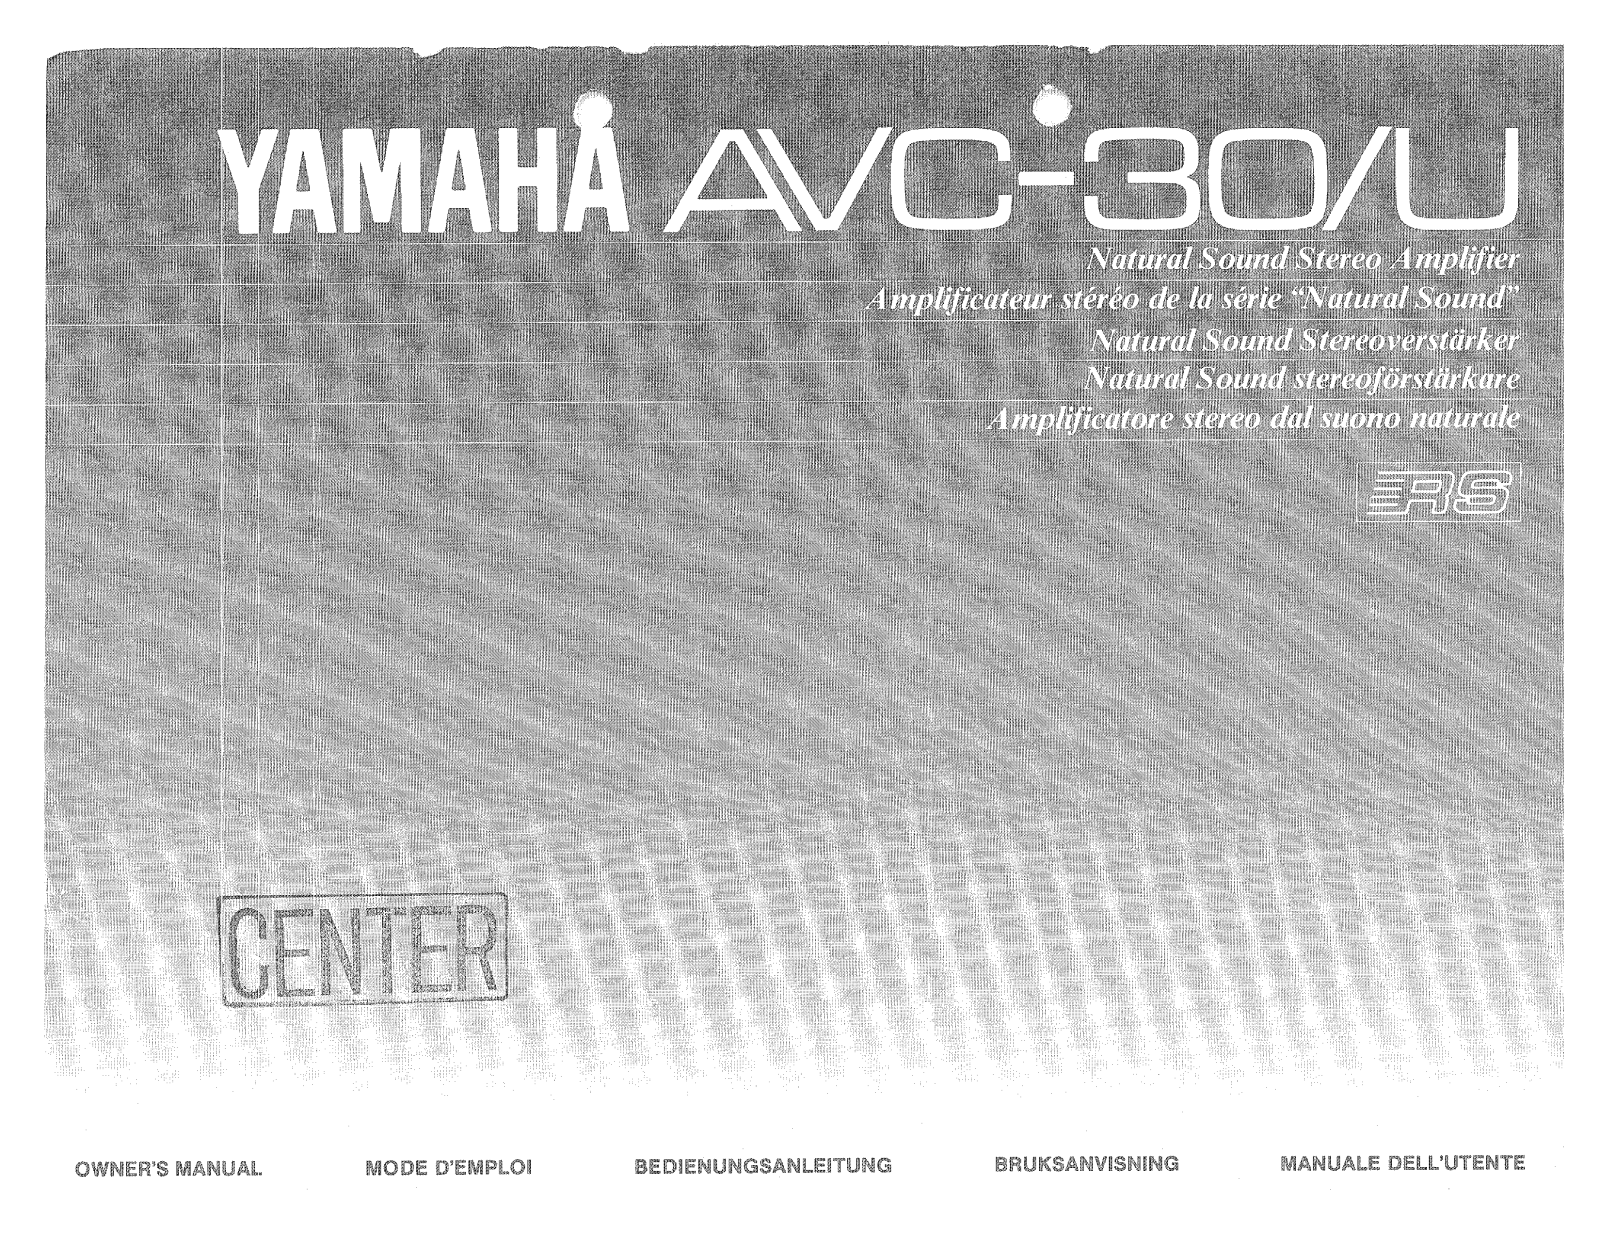 Yamaha AVC-30, AVC-30U Owner Manual